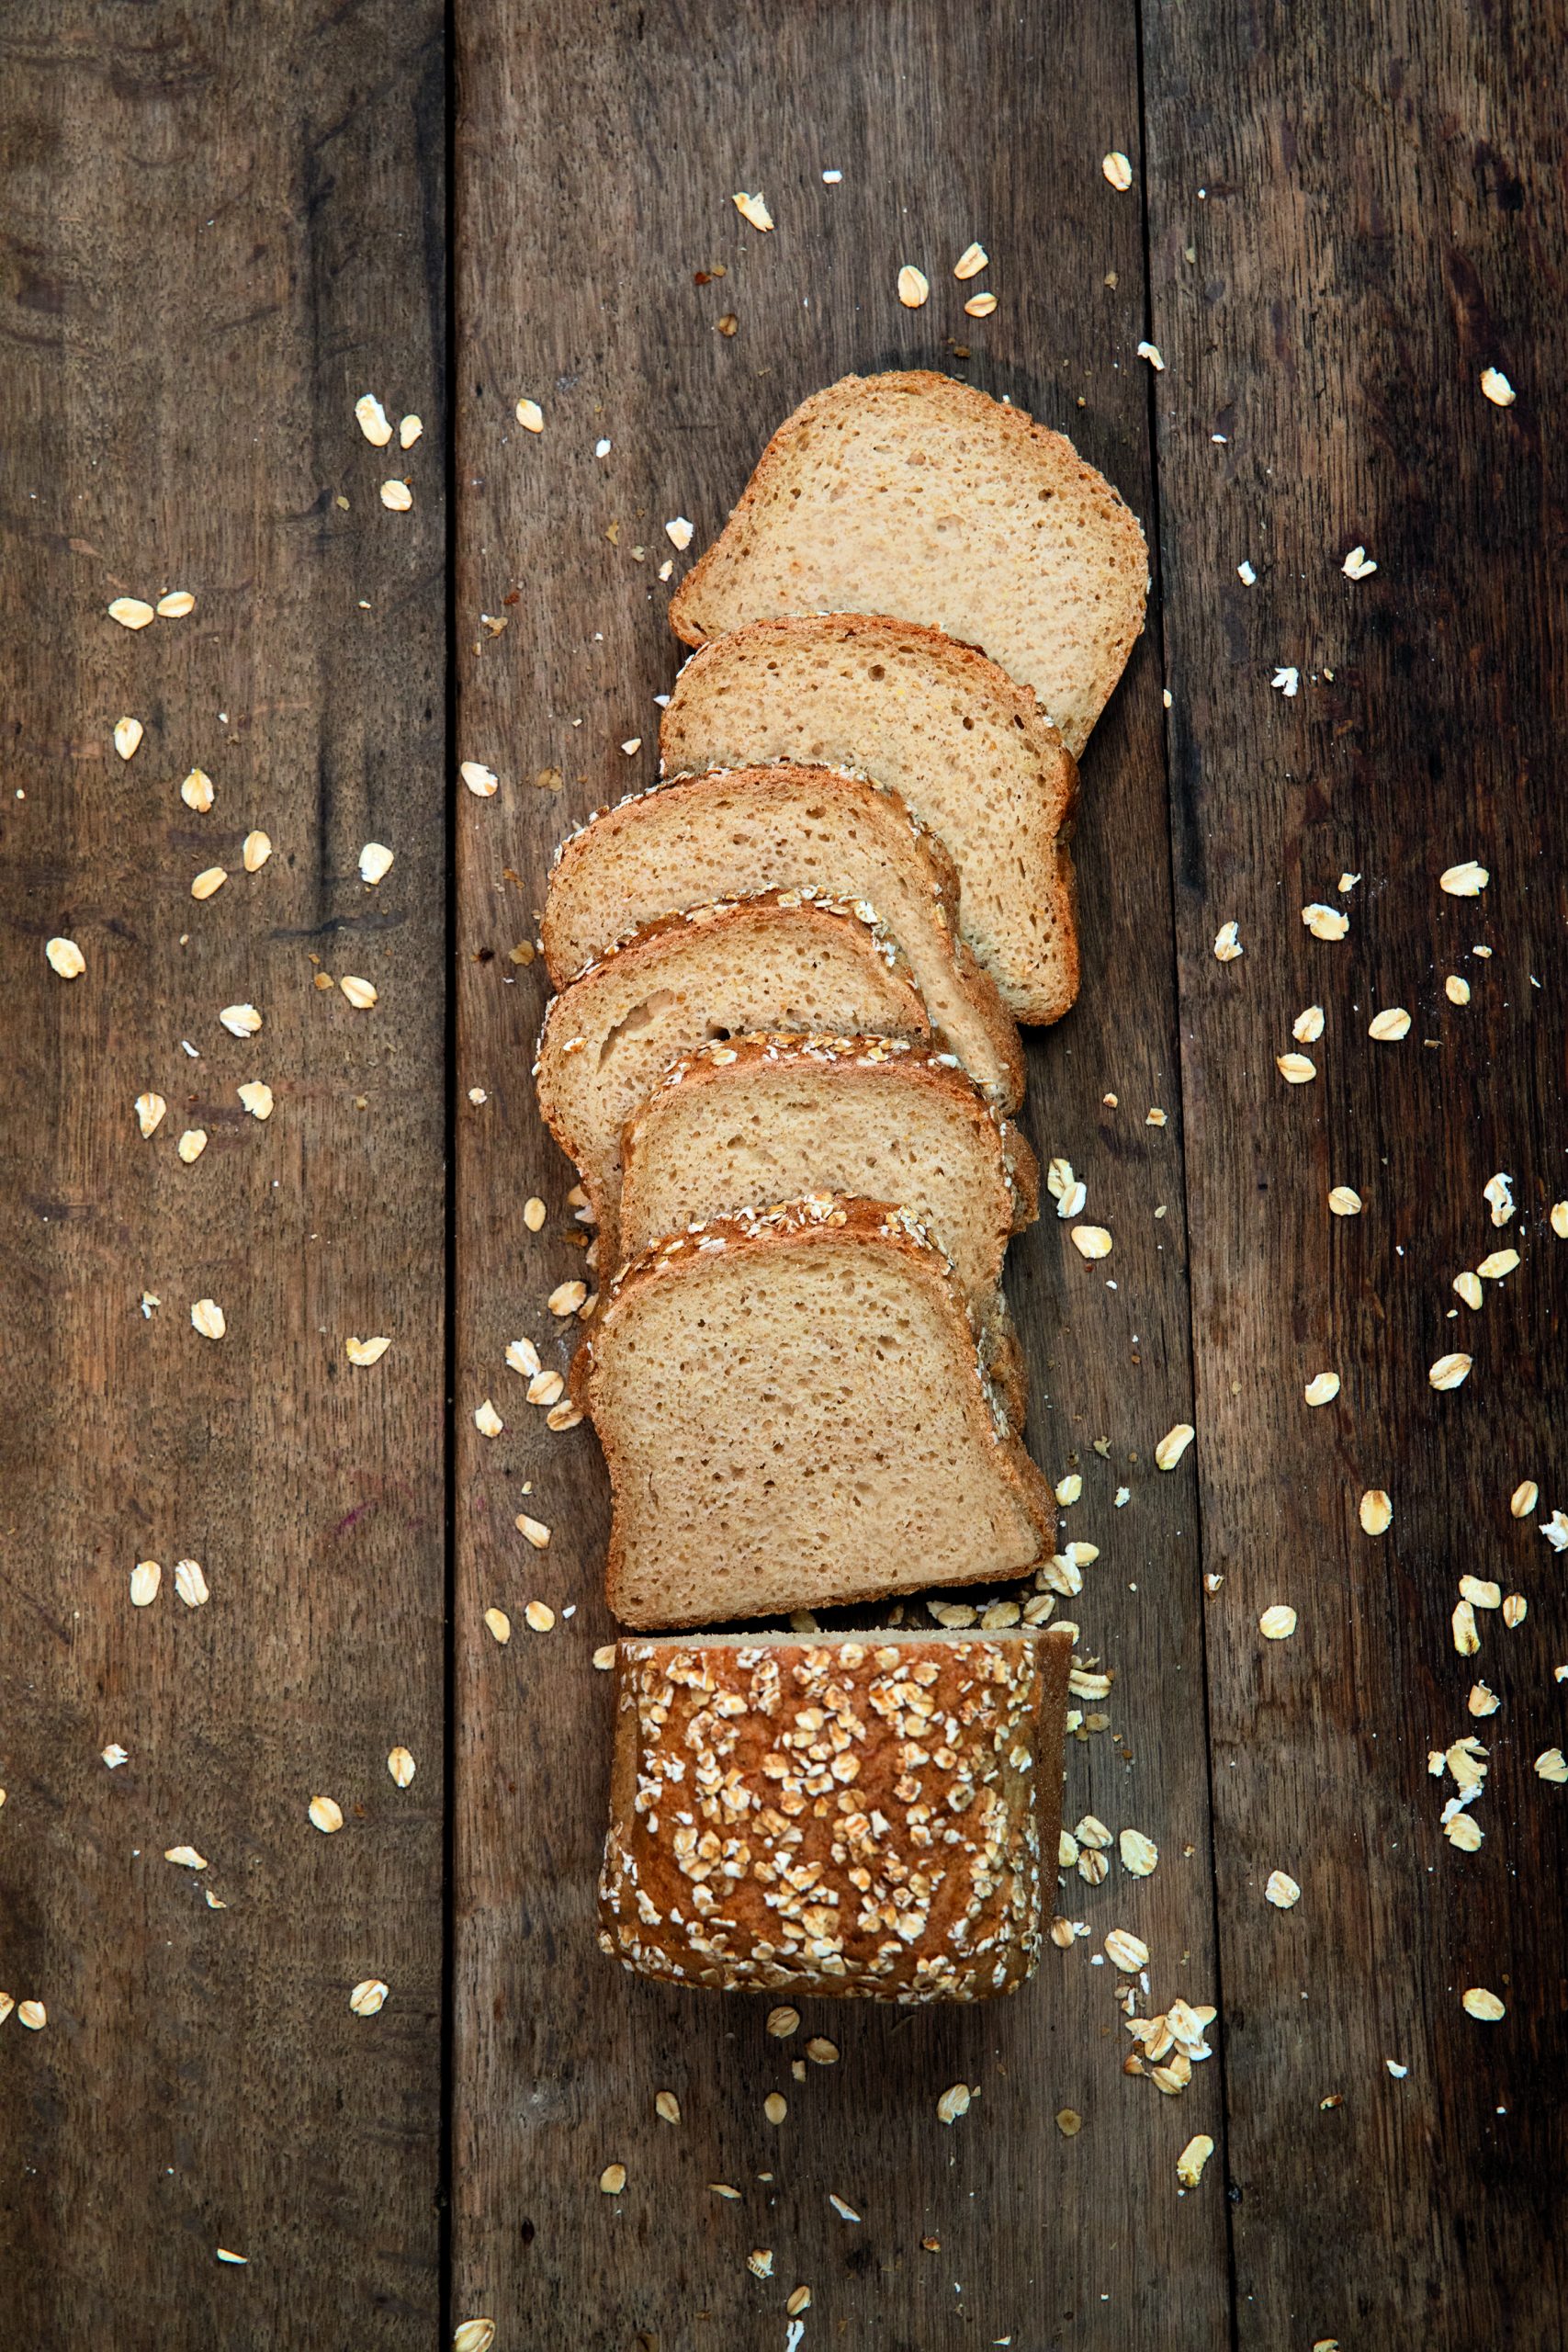 Ein Teil des B:PURE Sortiments: Brote, Brötchen, Schoko Kuchen und Baguette in einer weißen Schale.